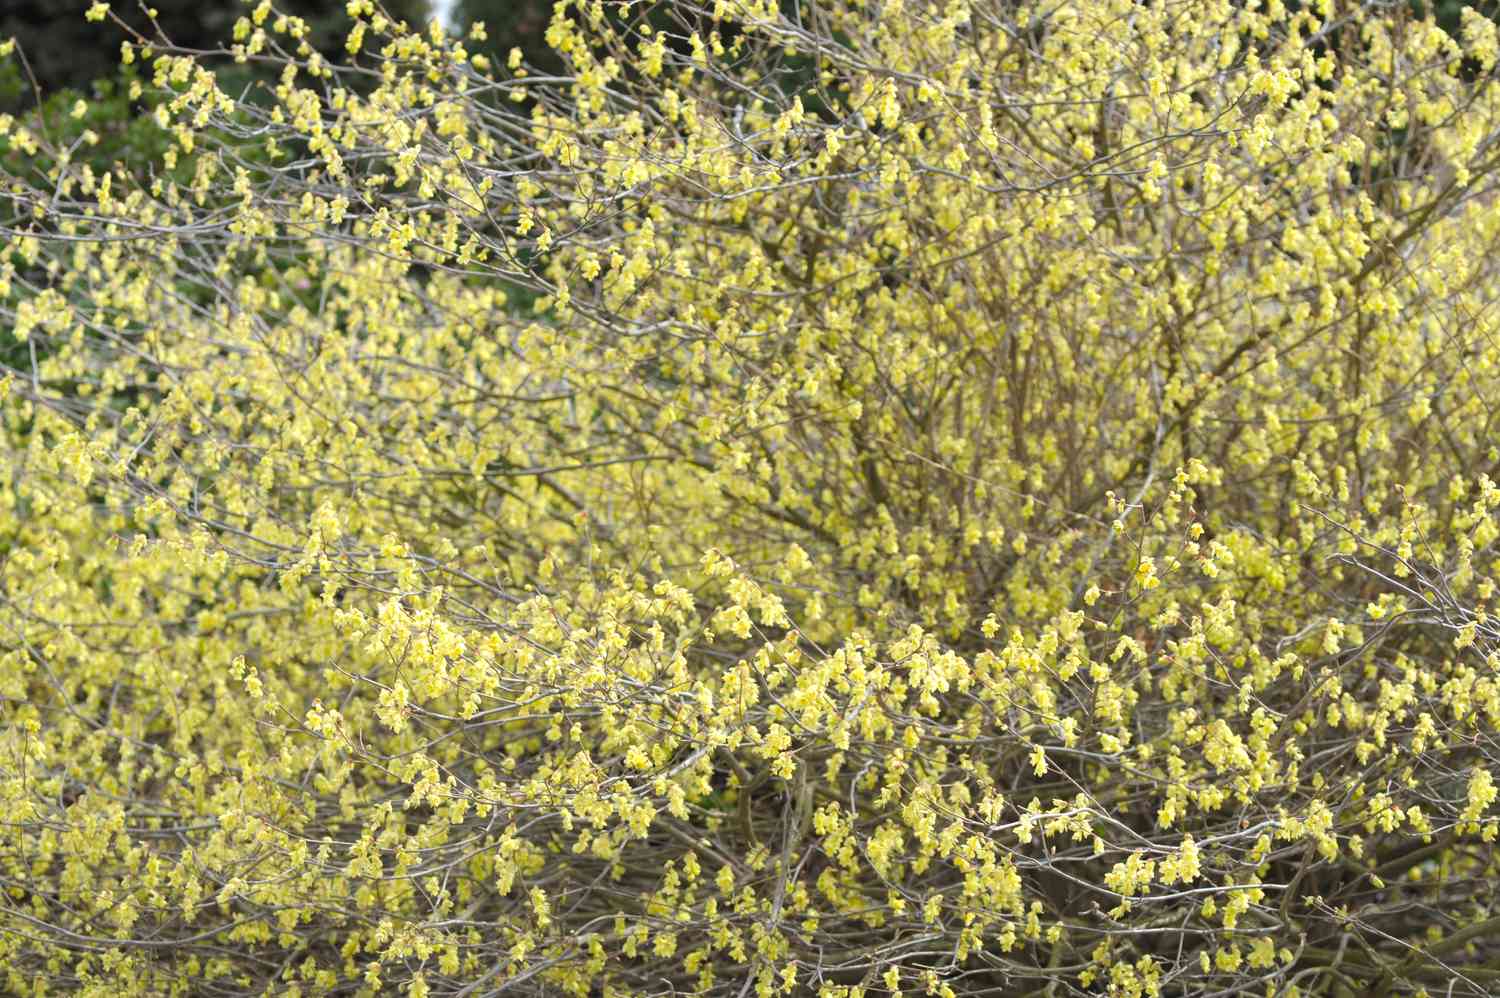 Bouton d'or arbuste de noisetier d'hiver avec de longues branches étendues avec de petites fleurs jaune pâle